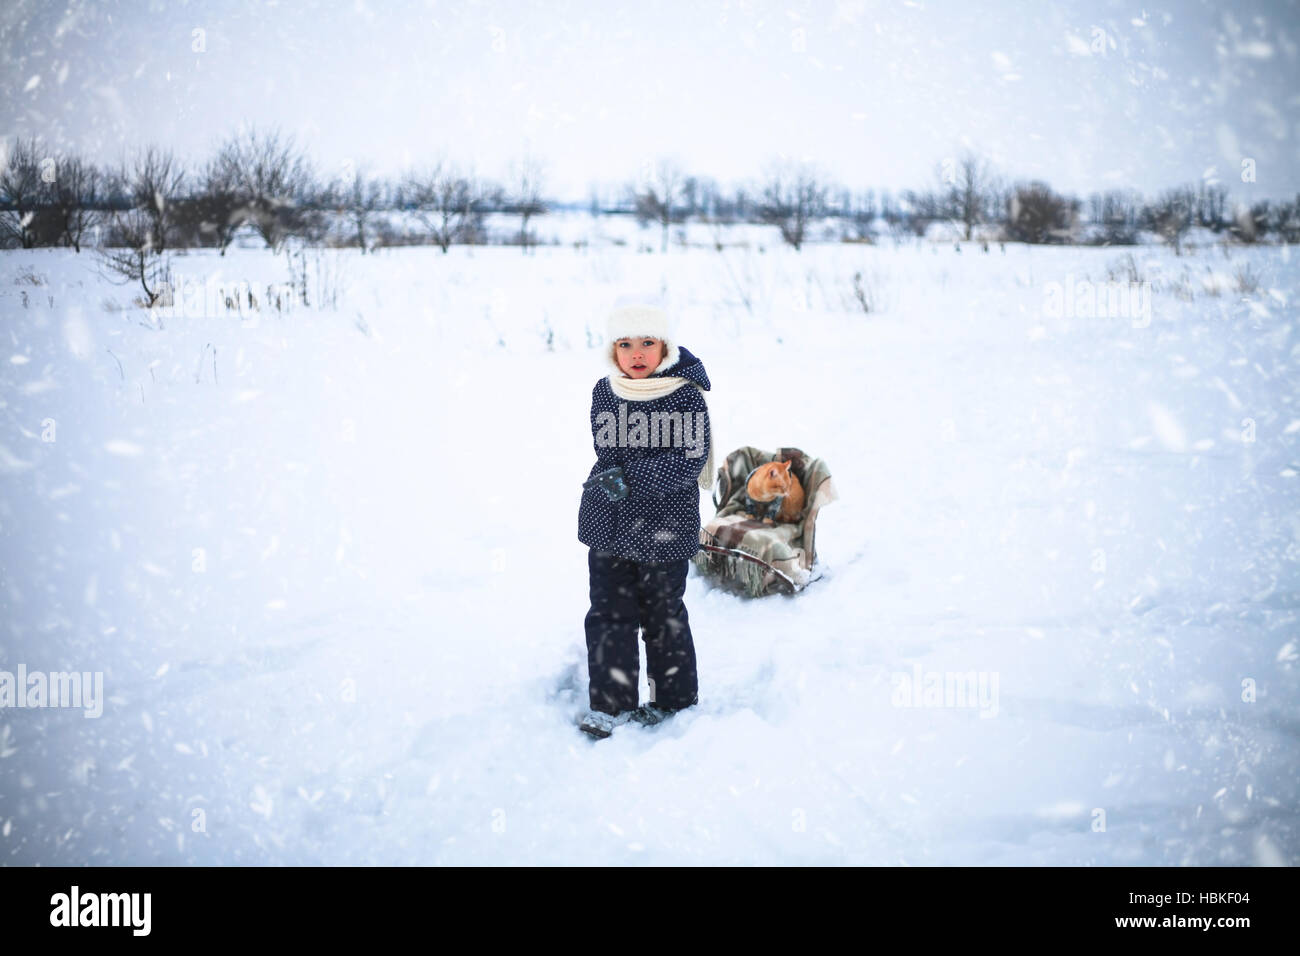 Kleines Mädchen fuhr Schlitten Whith eine rote Katze auf Schnee auf dem Lande. Stockfoto